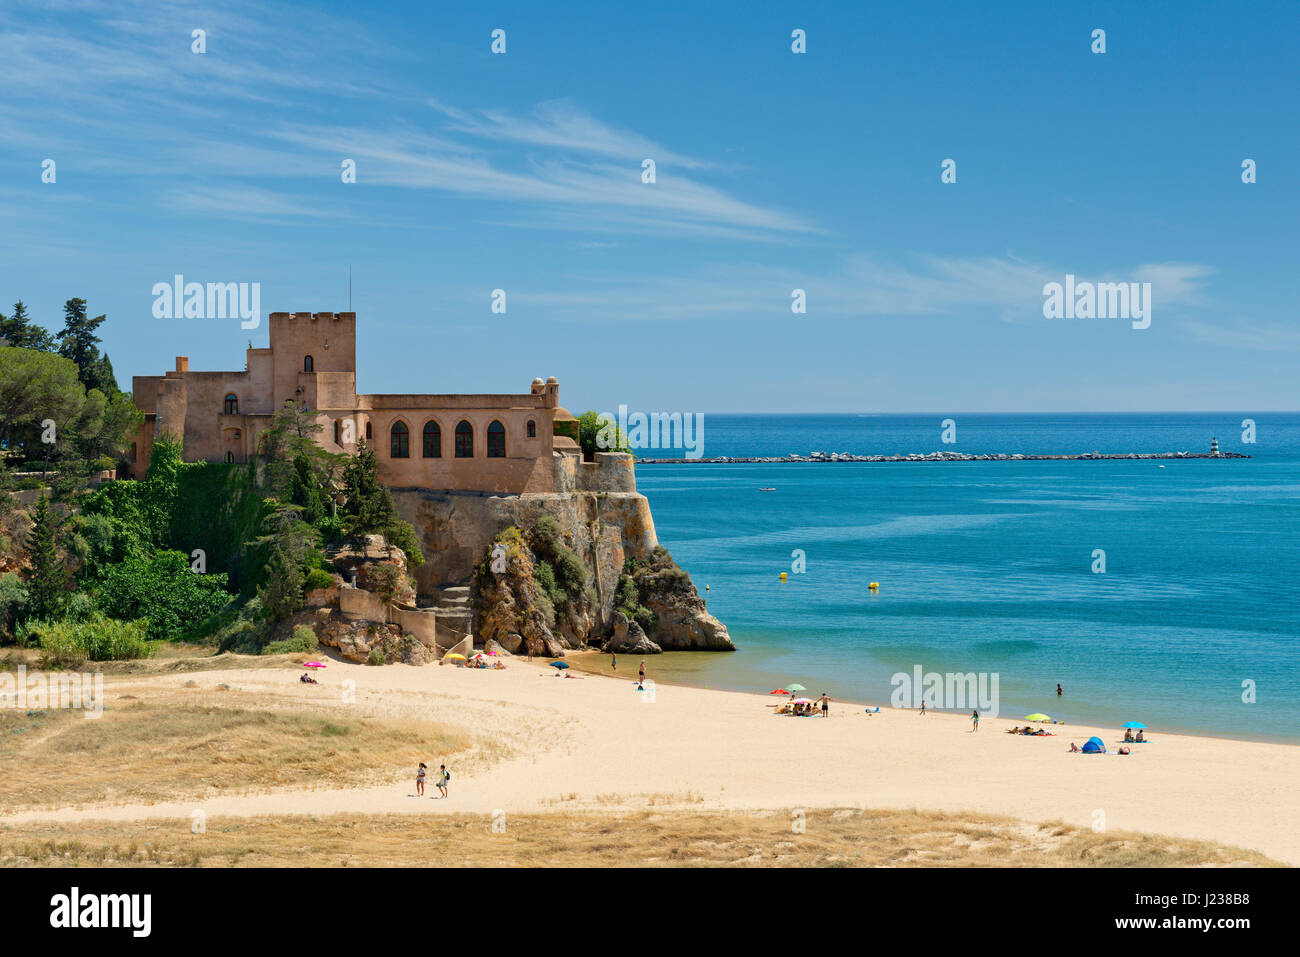 Portugal, the Algarve, the Forte de Sao Joao, Ferragudo Stock Photo